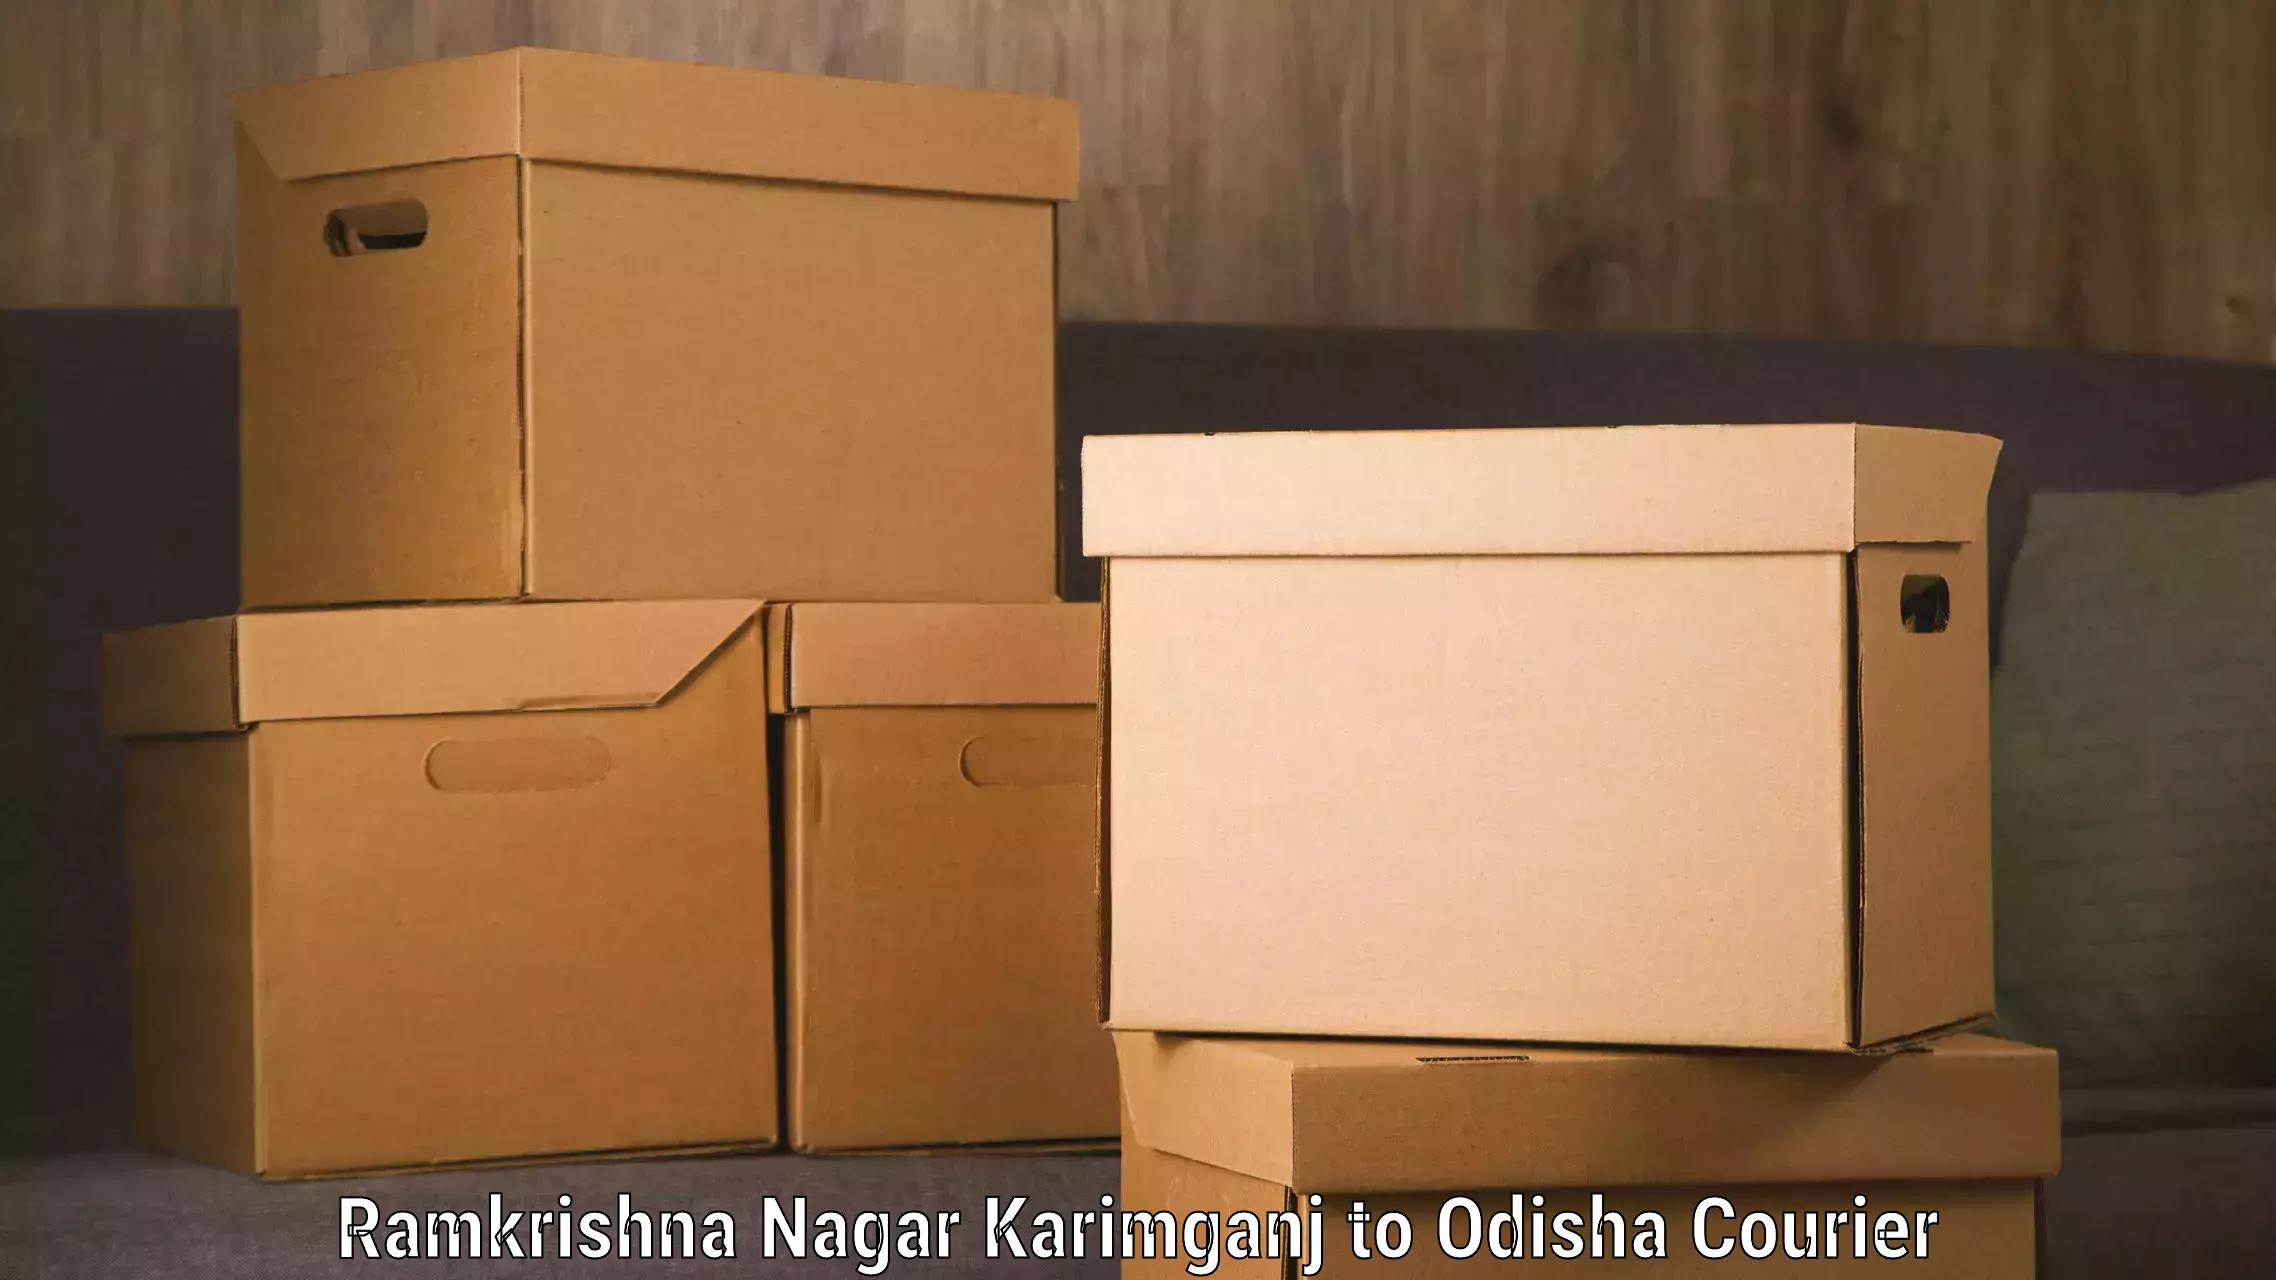 Luggage transport consultancy Ramkrishna Nagar Karimganj to Talcher